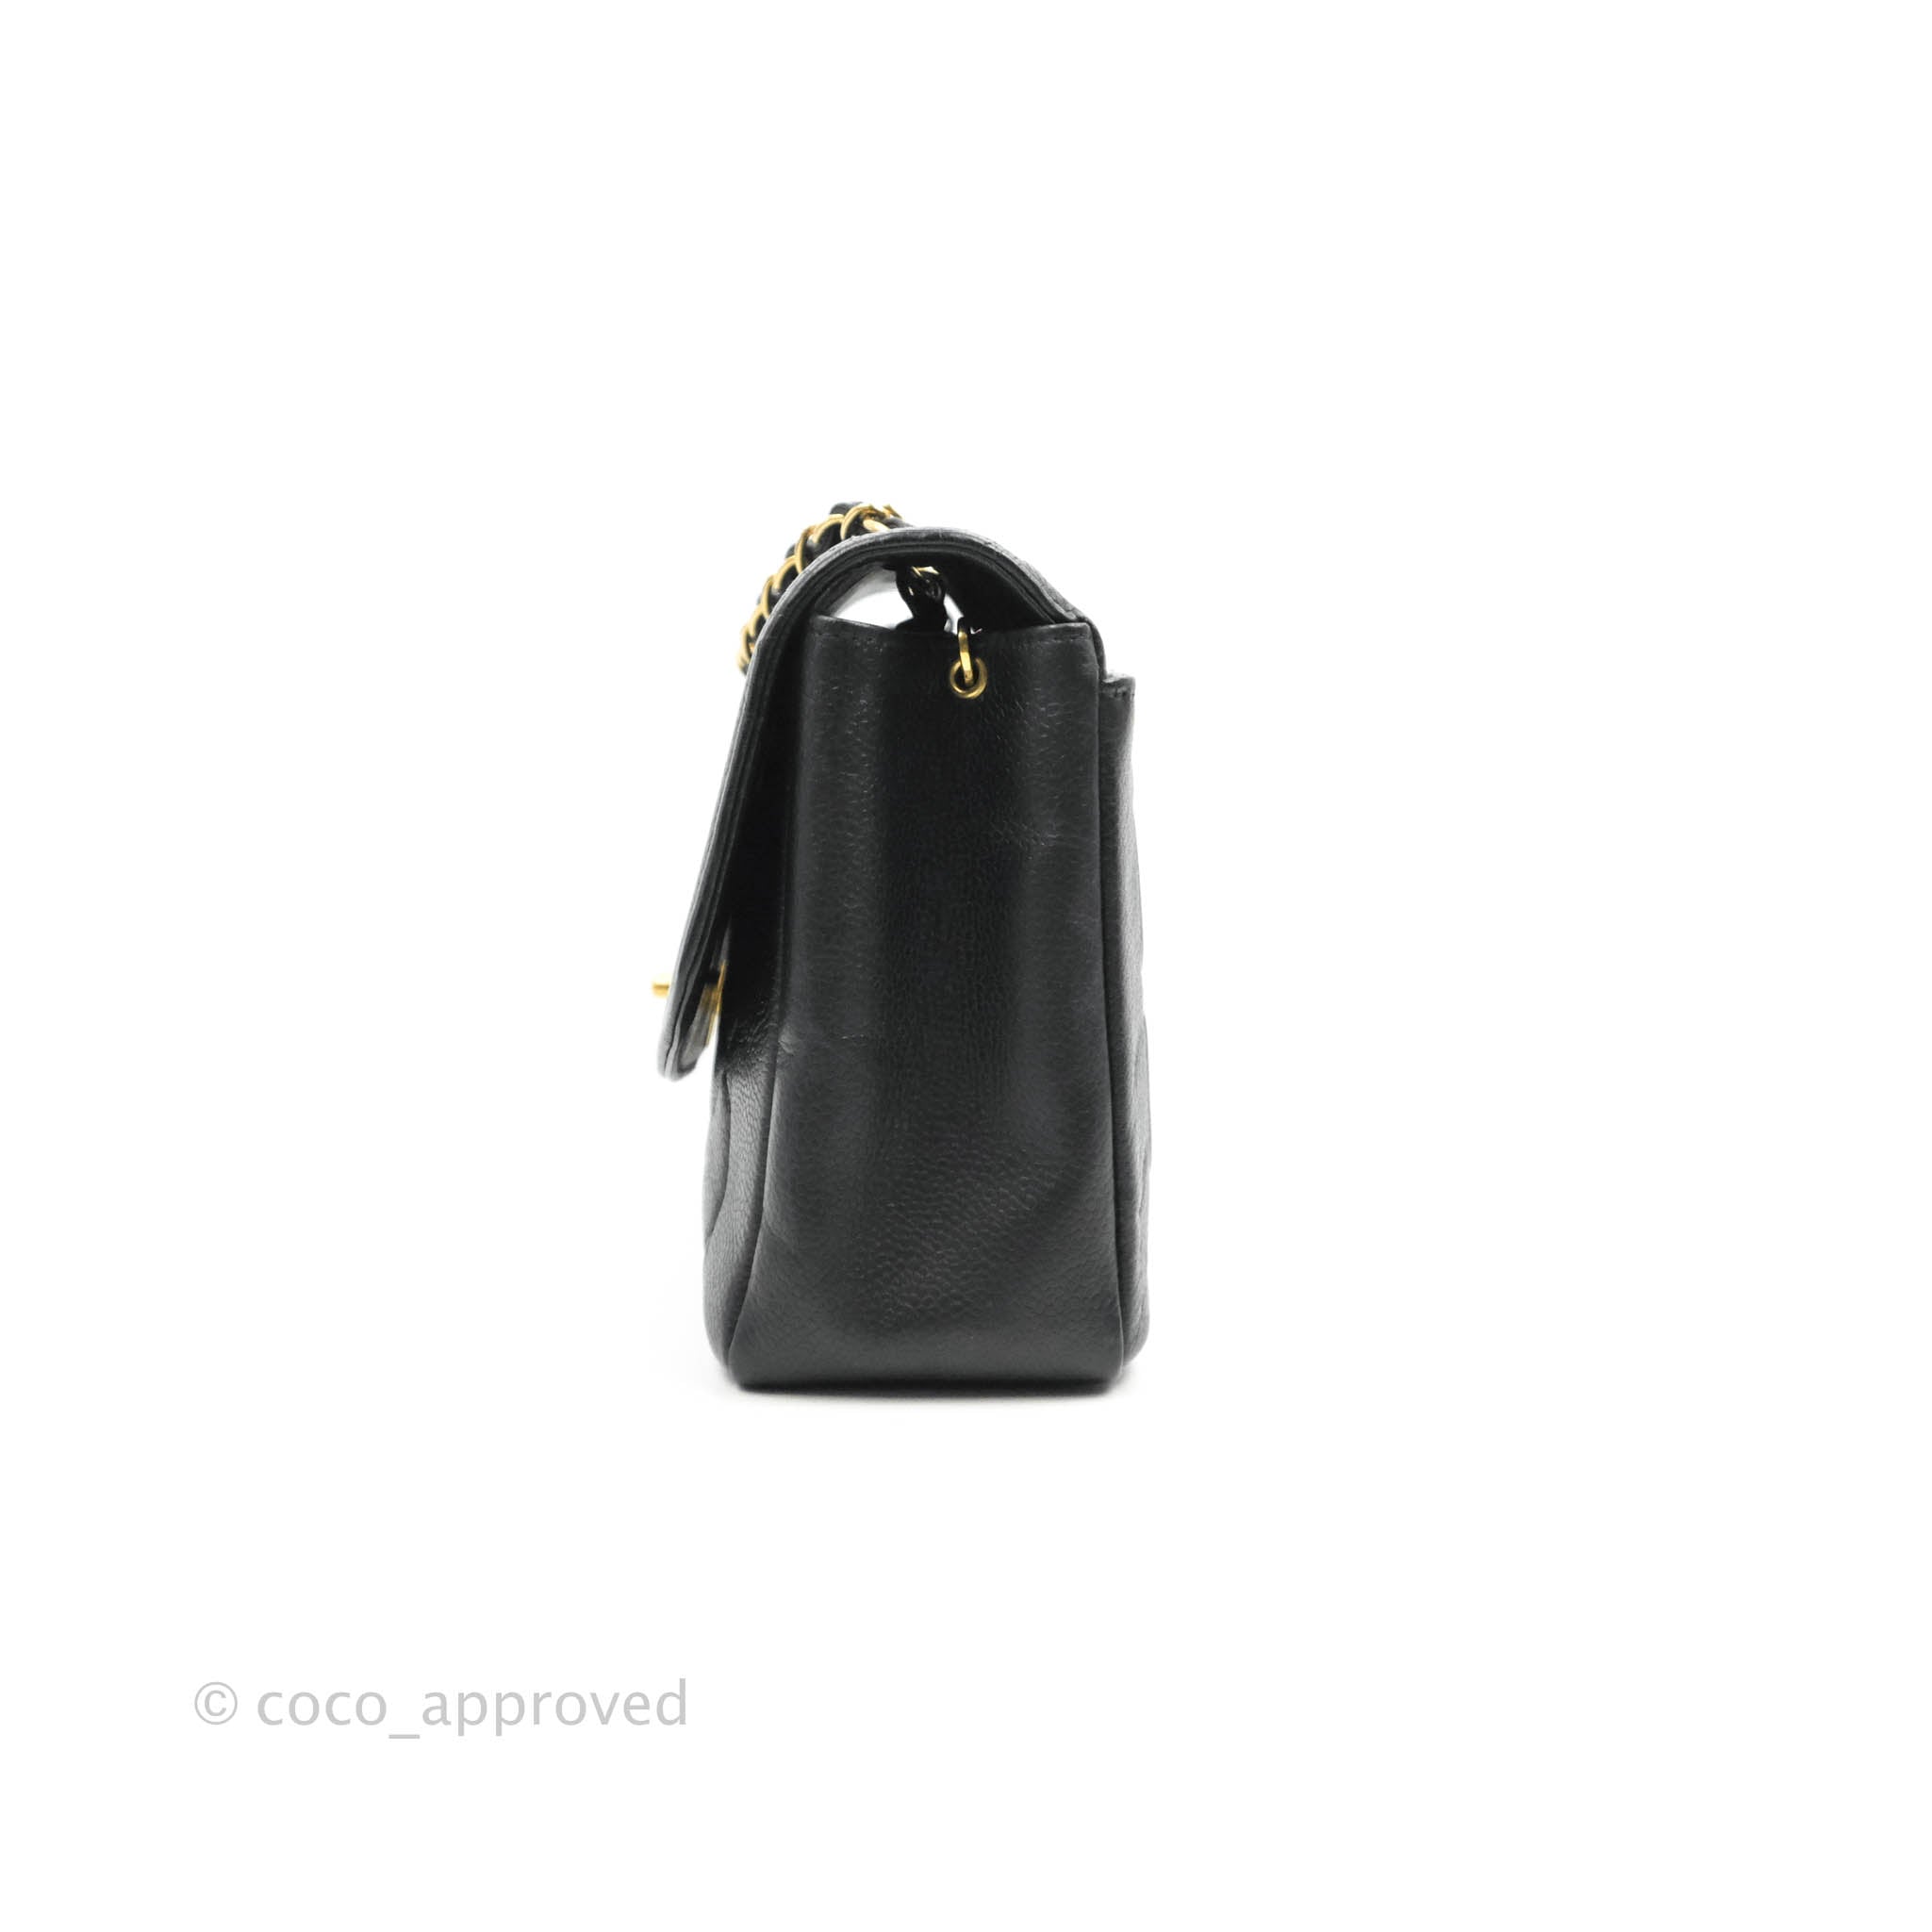 Chanel Vintage Diana Flap Bag Black Medium 24k GHW Pocket